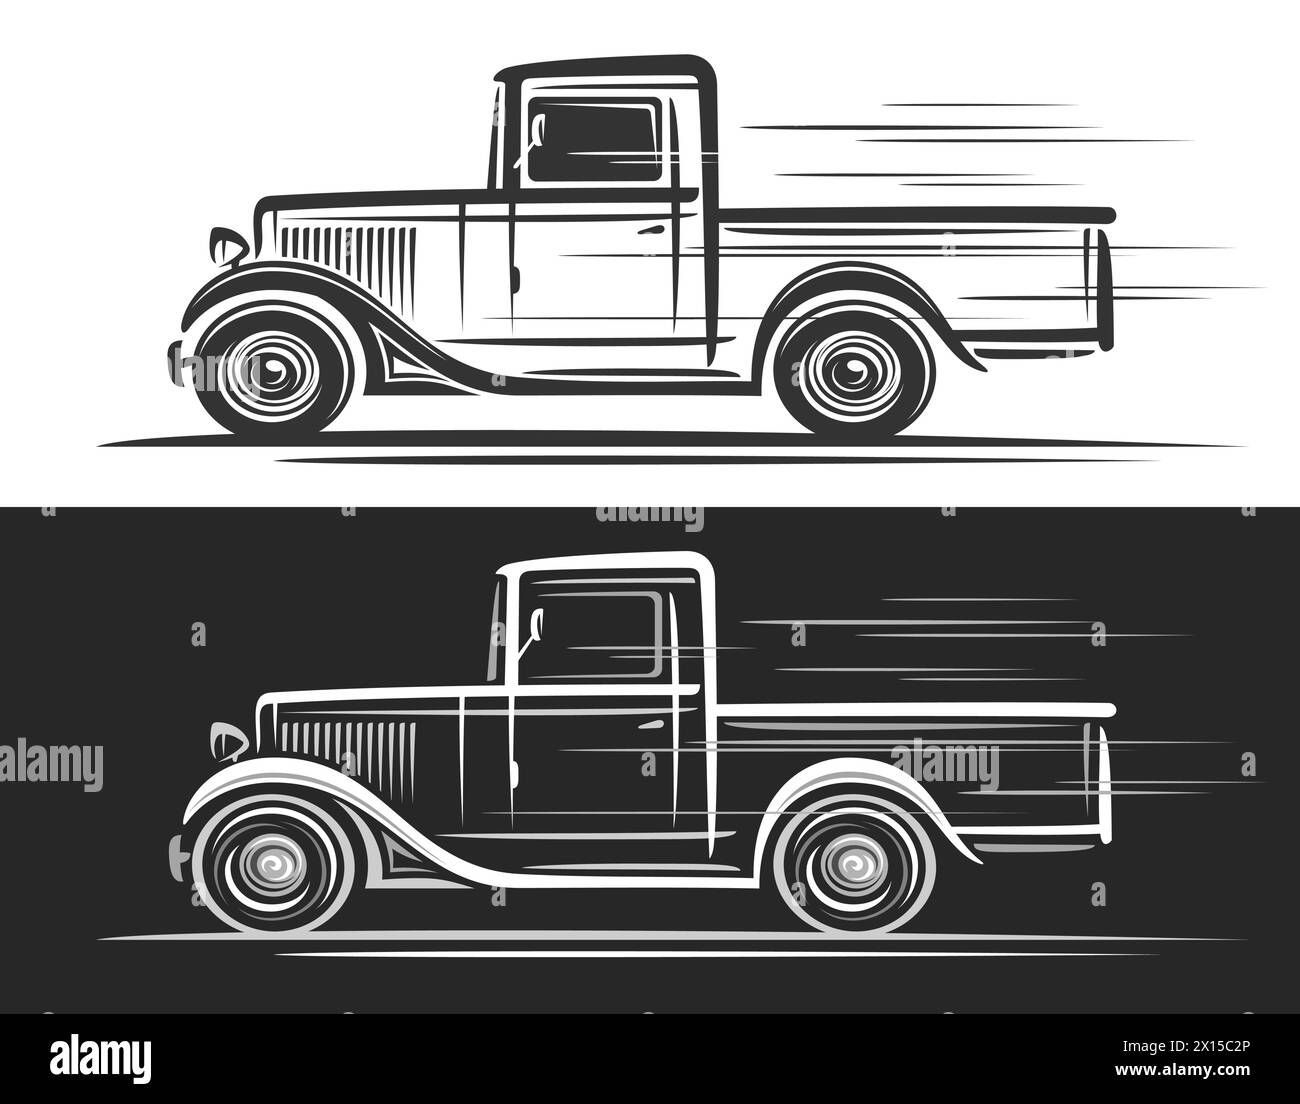 Logotipo del vector para el camión vintage, banner decorativo horizontal con la ilustración simple del contorno del camión vintage americano monocromo en movimiento, dibujo a mano Ilustración del Vector